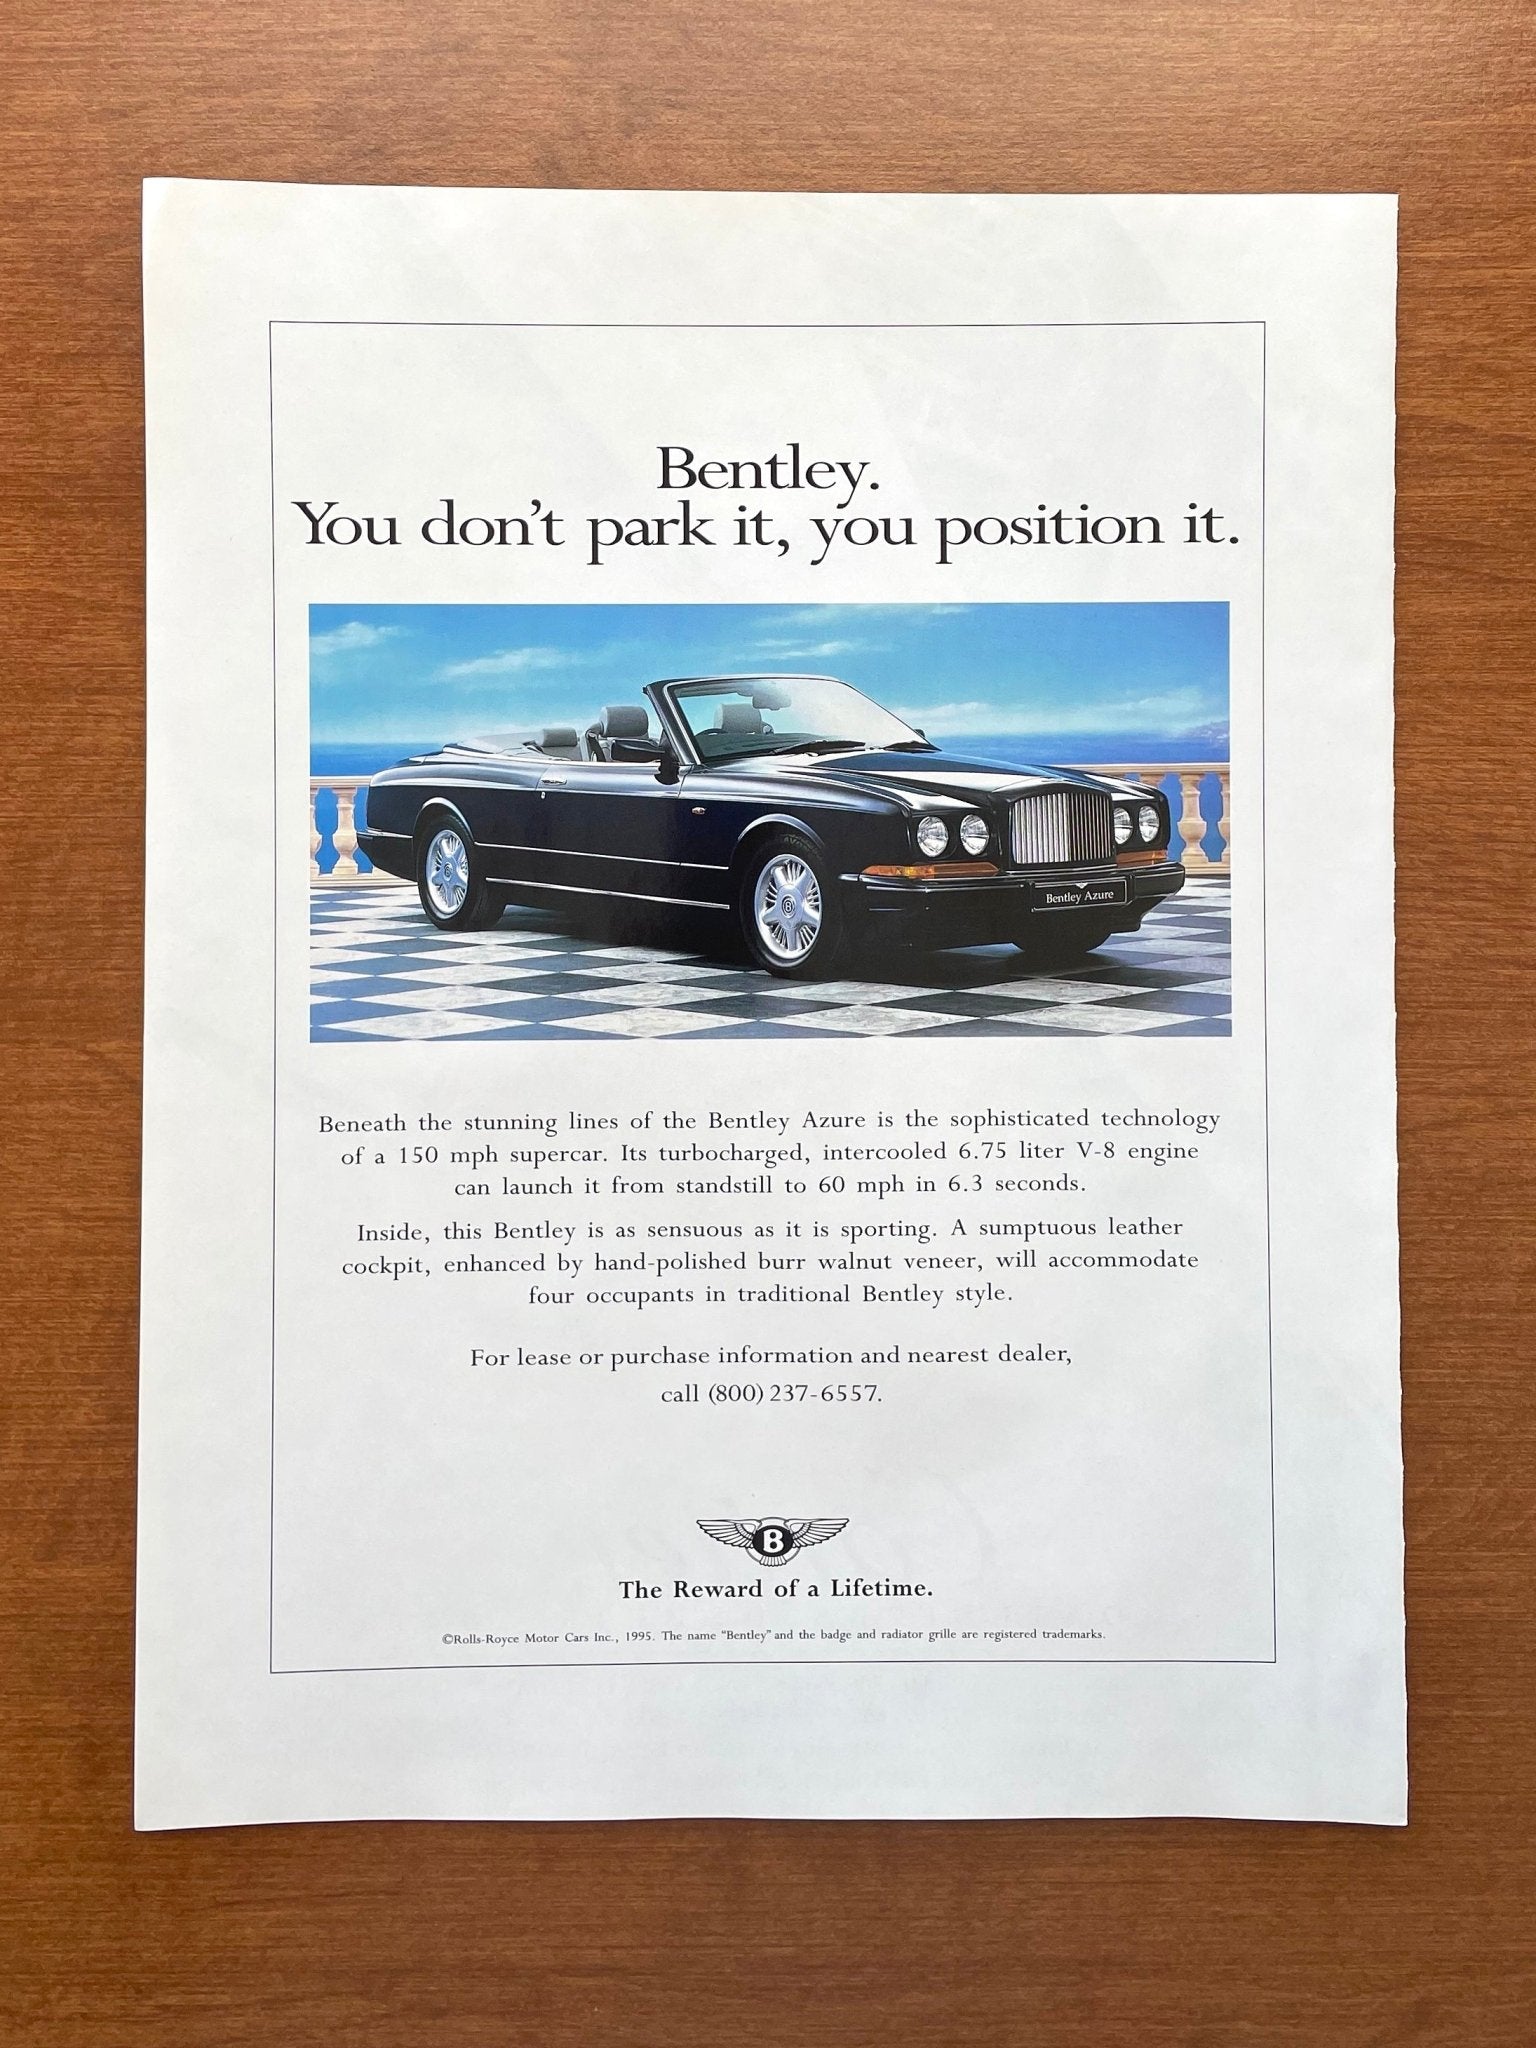 1996 Bentley Azure "you position it." Advertisement